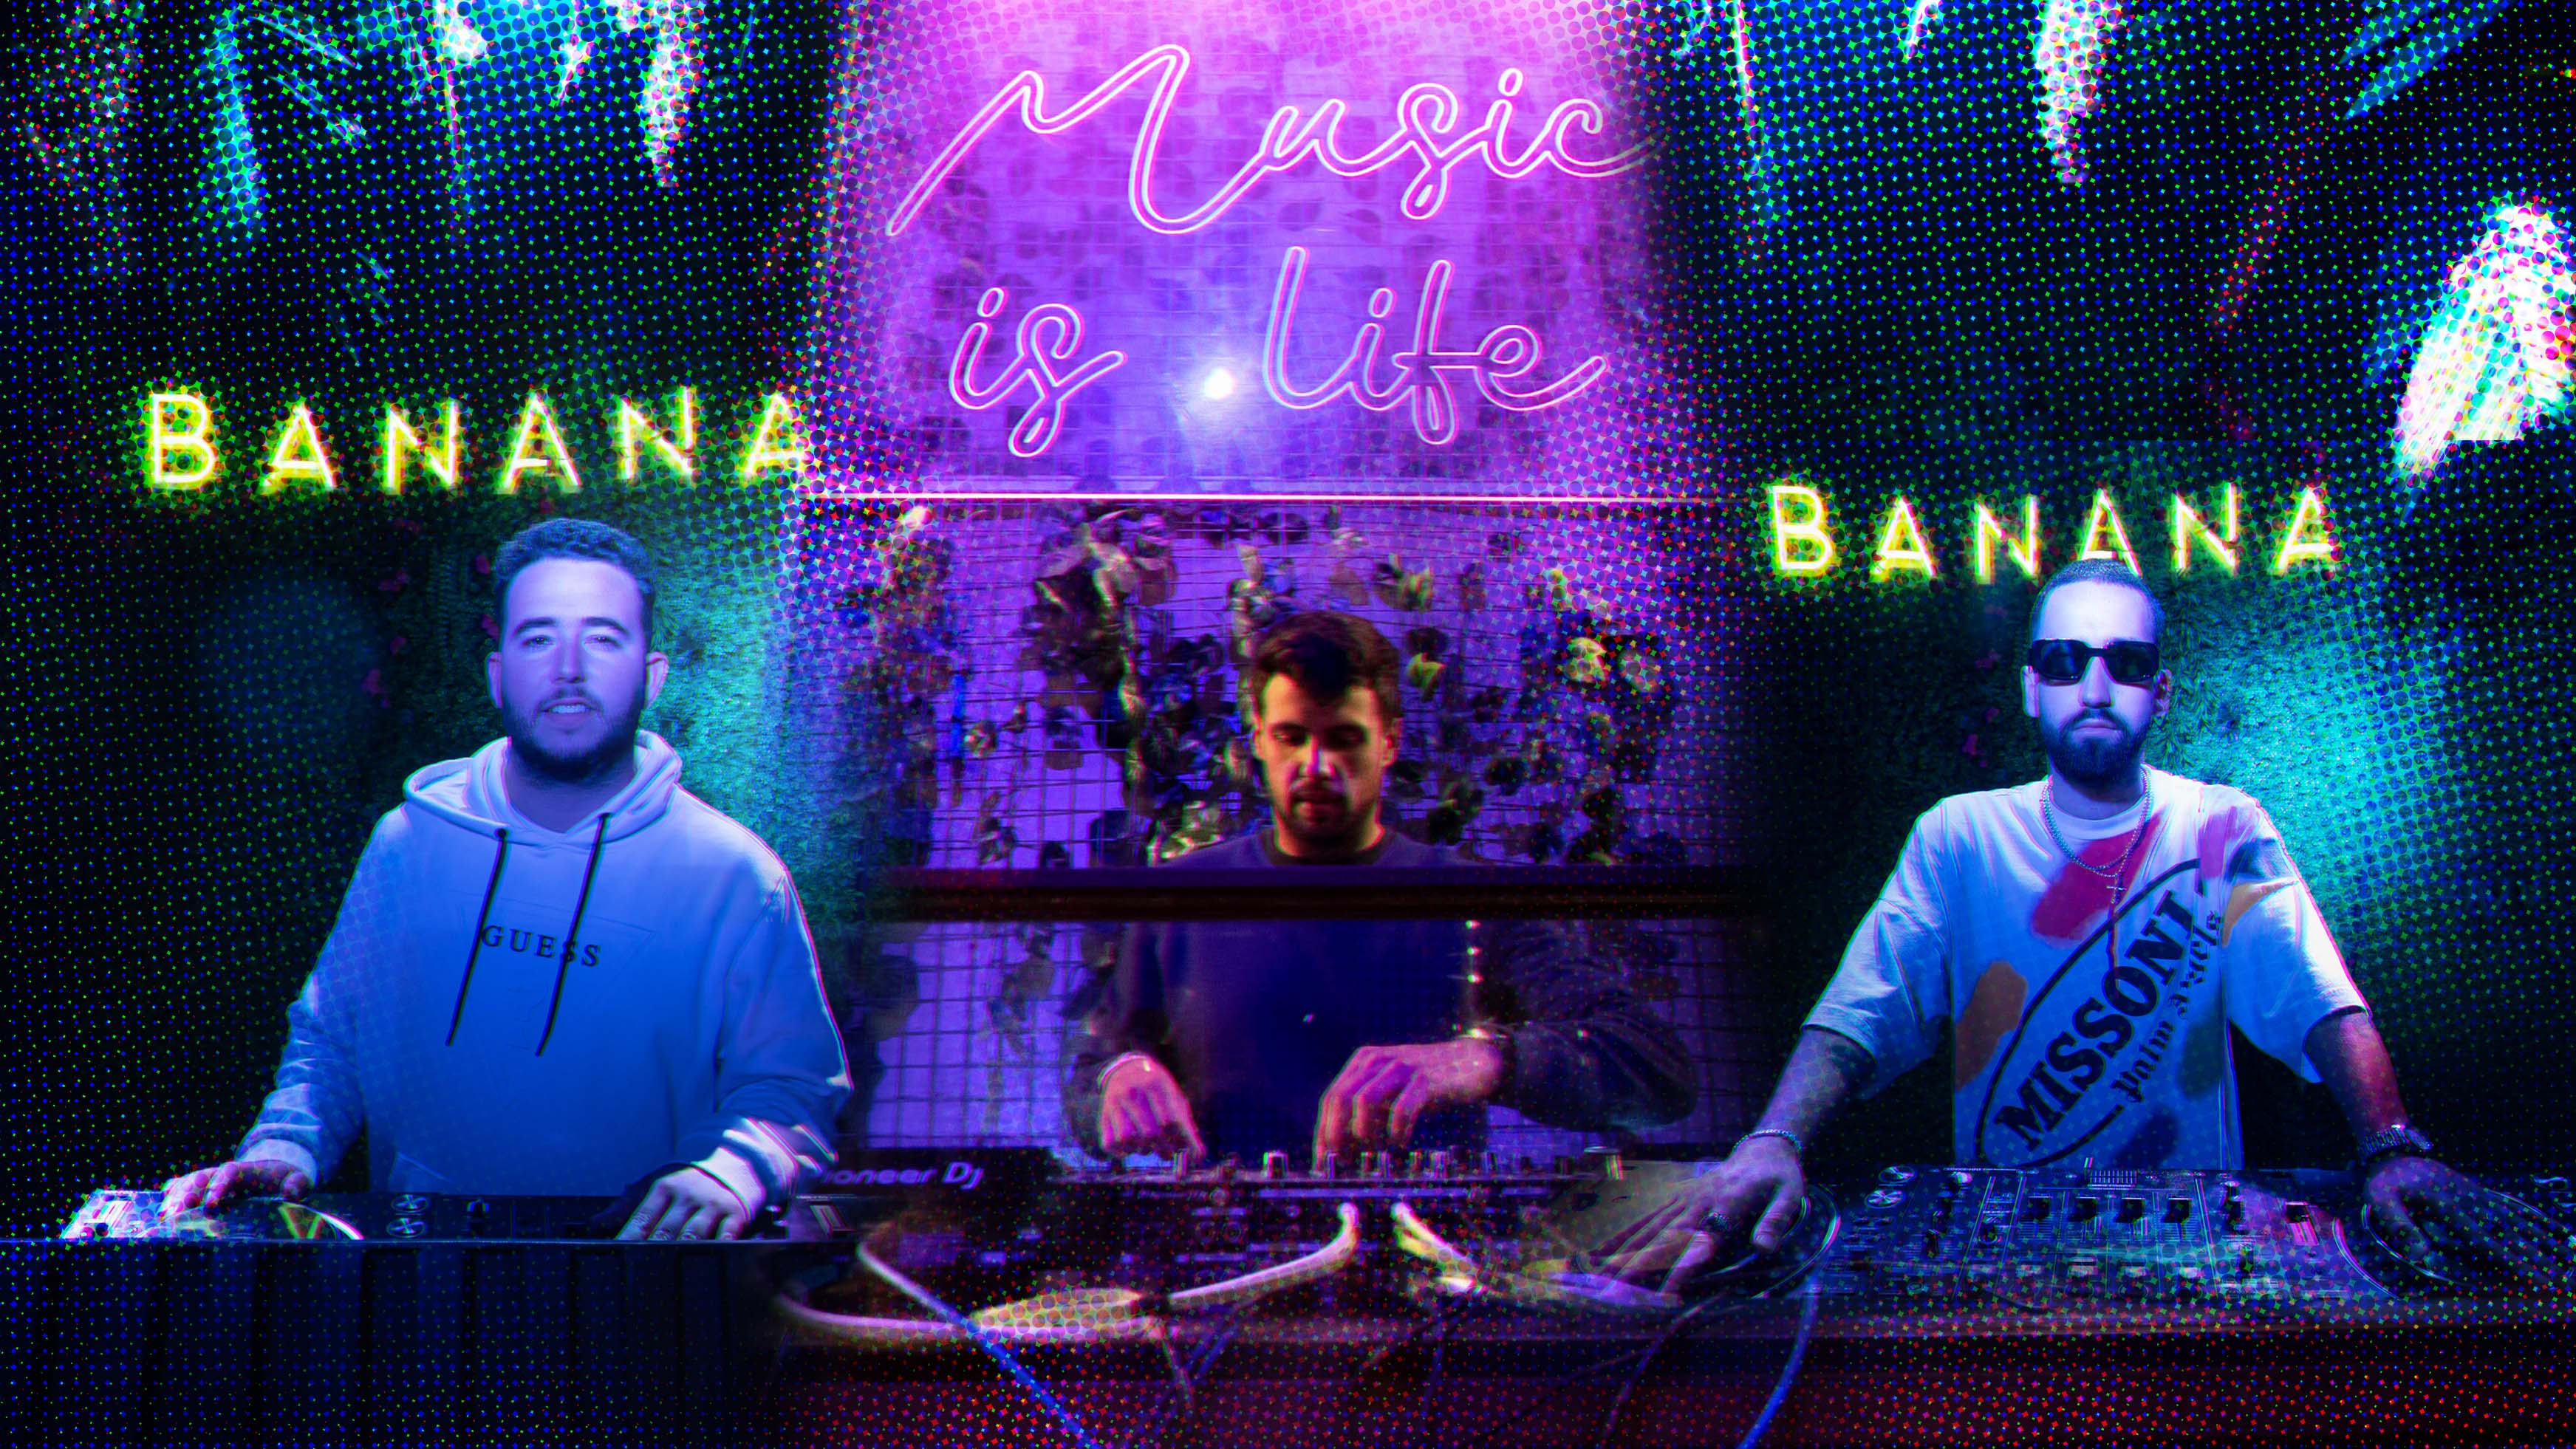 Castro, Ale Rodri y Batanero, algunos de los DJ de moda en las discotecas de El Puerto.